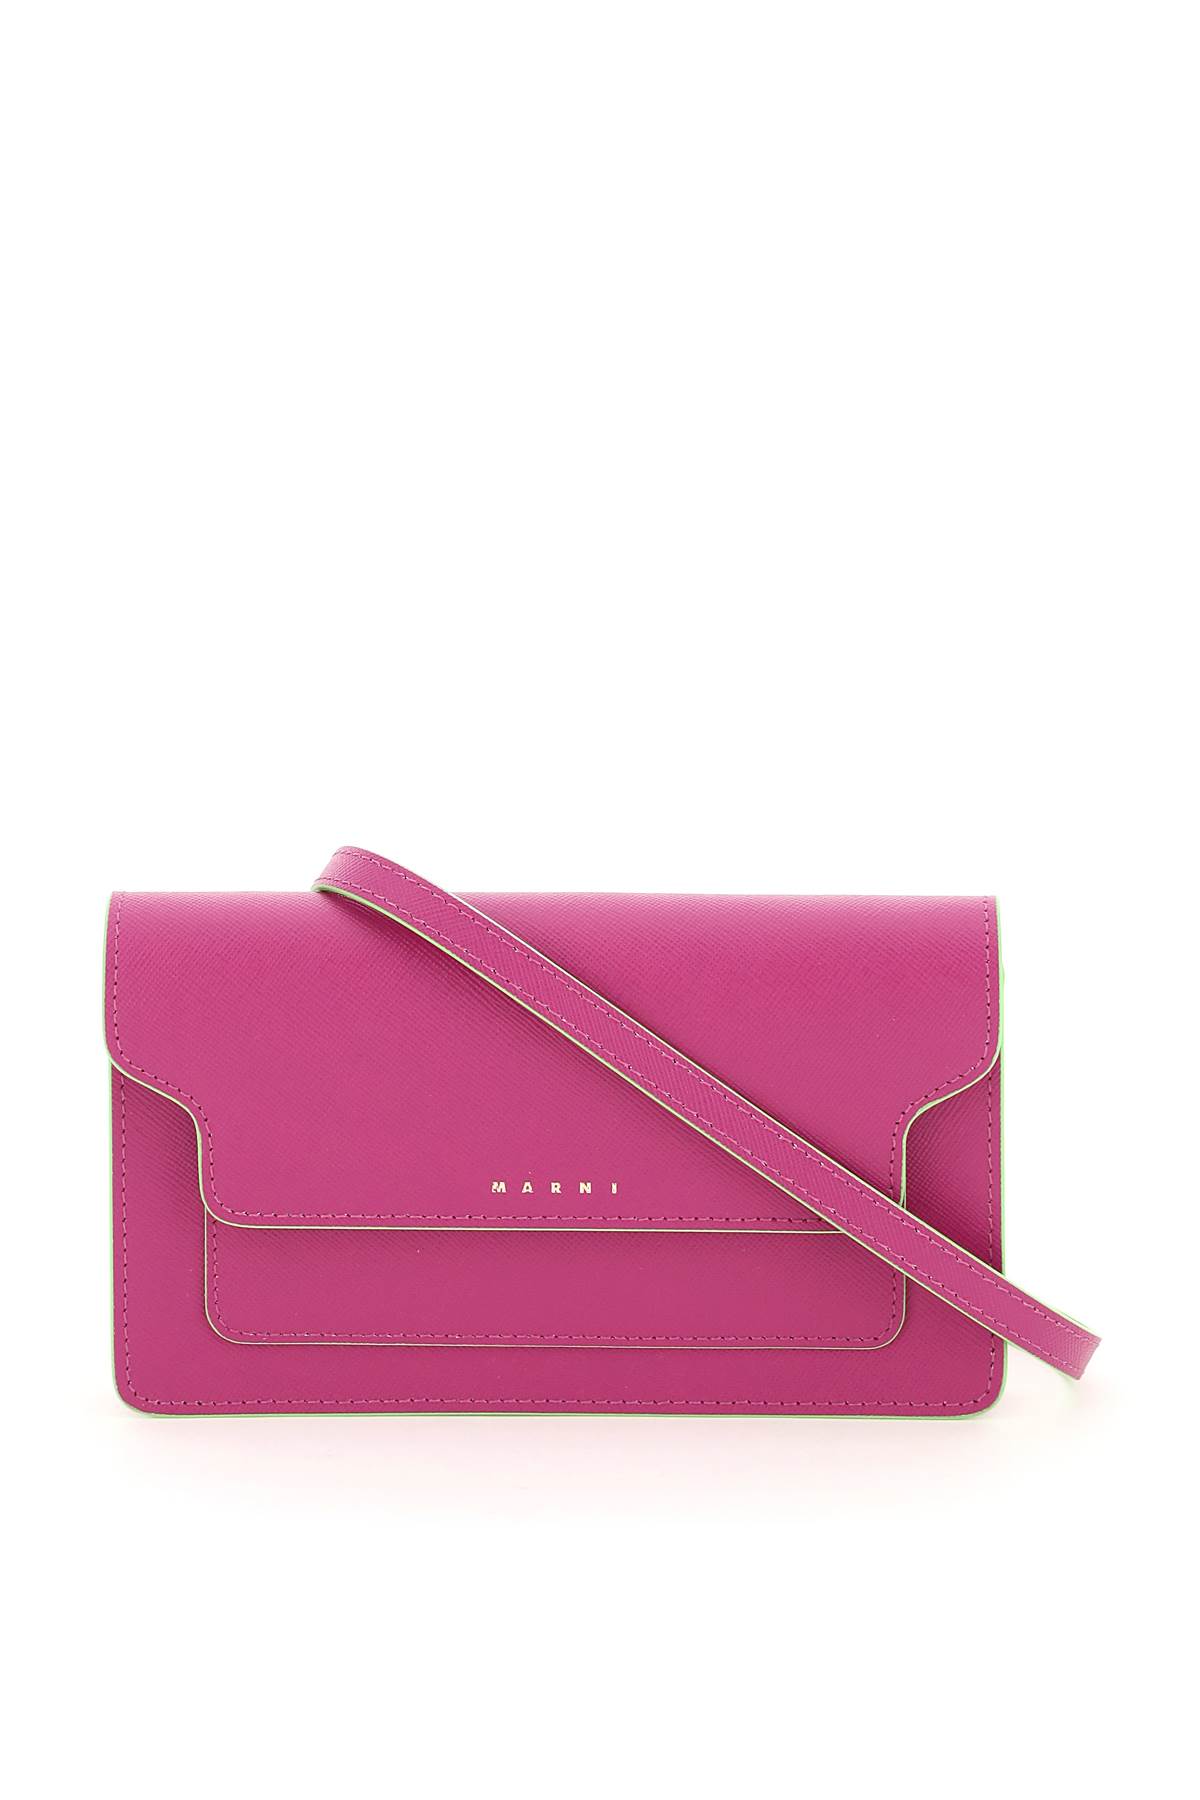 Marni Mini Bag Wallet With Shoulder Strap | Smart Closet